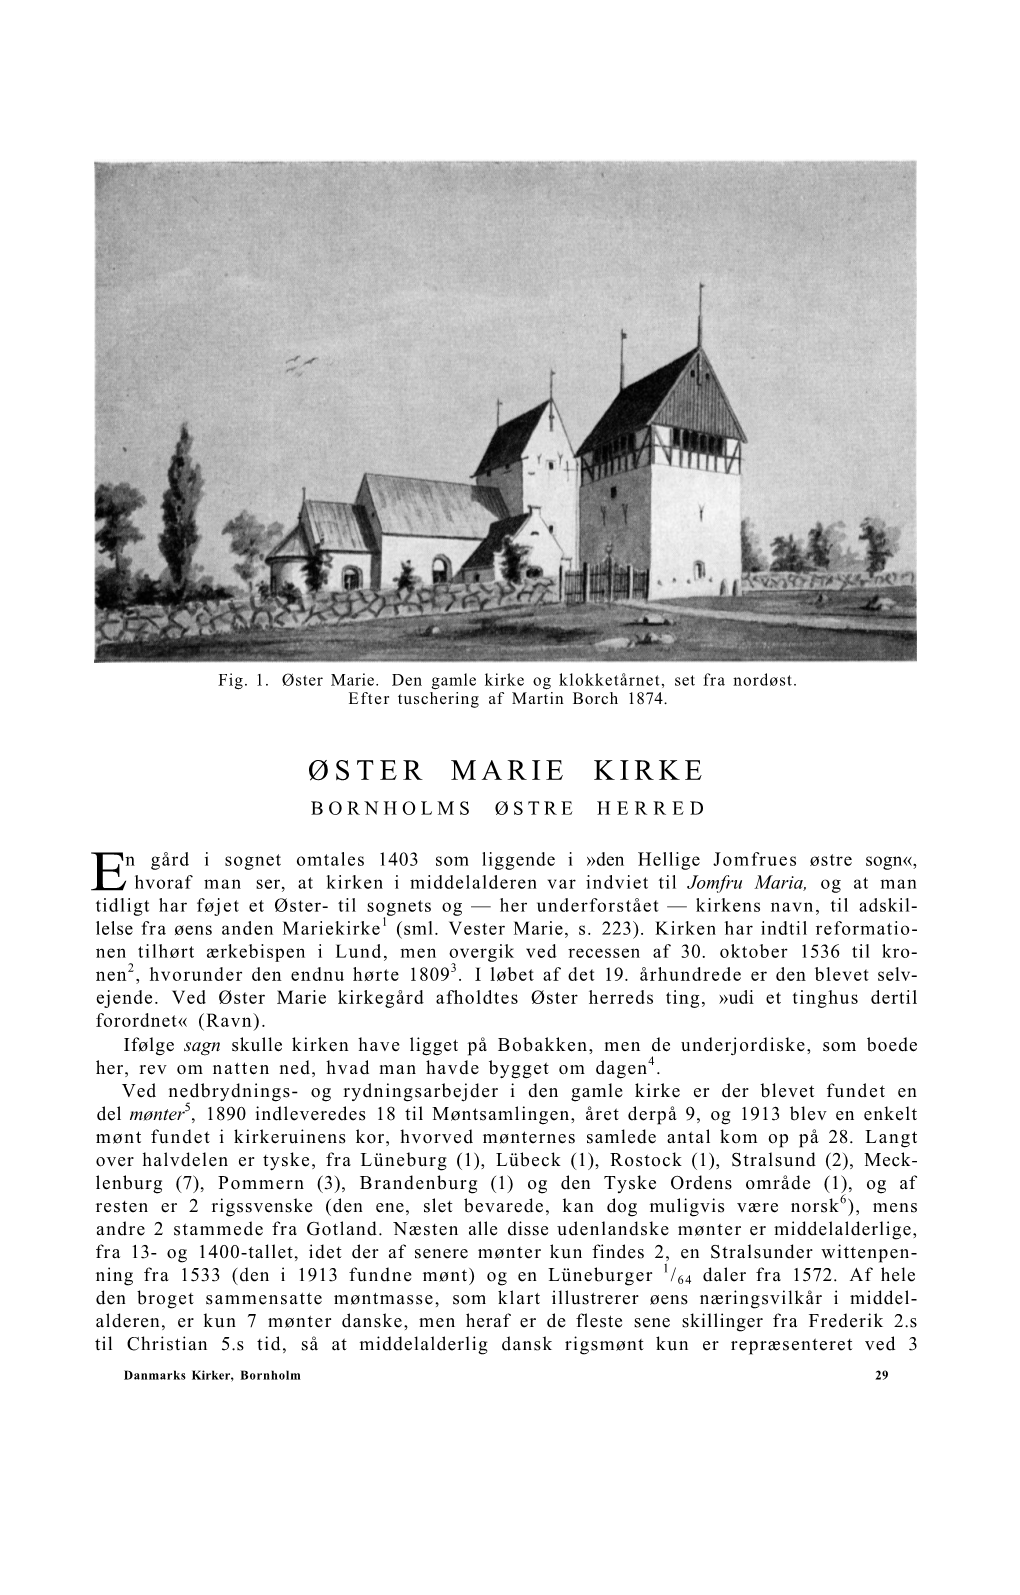 Øster Marie Kirke Bornholms Østre Herred